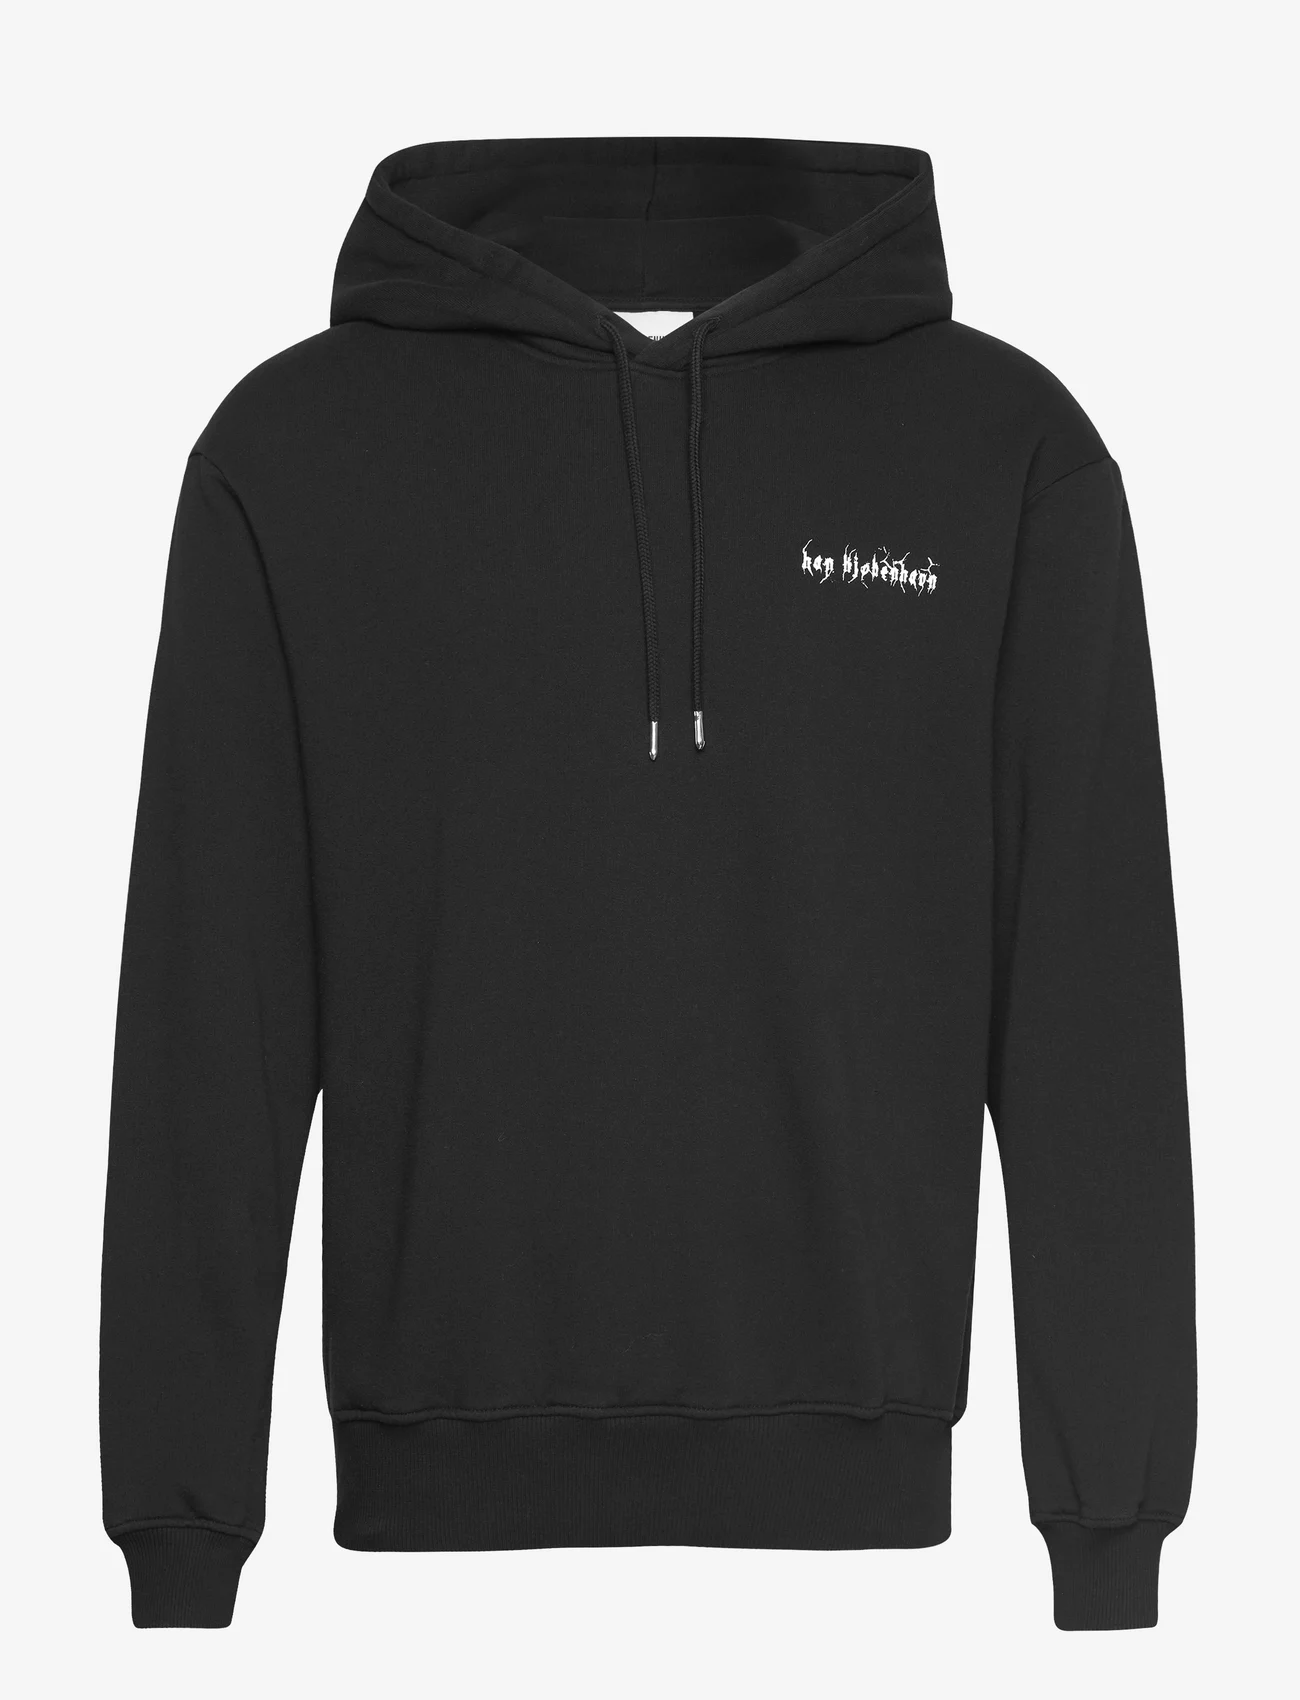 HAN Kjøbenhavn - Artwork Hoodie - hoodies - black - 0